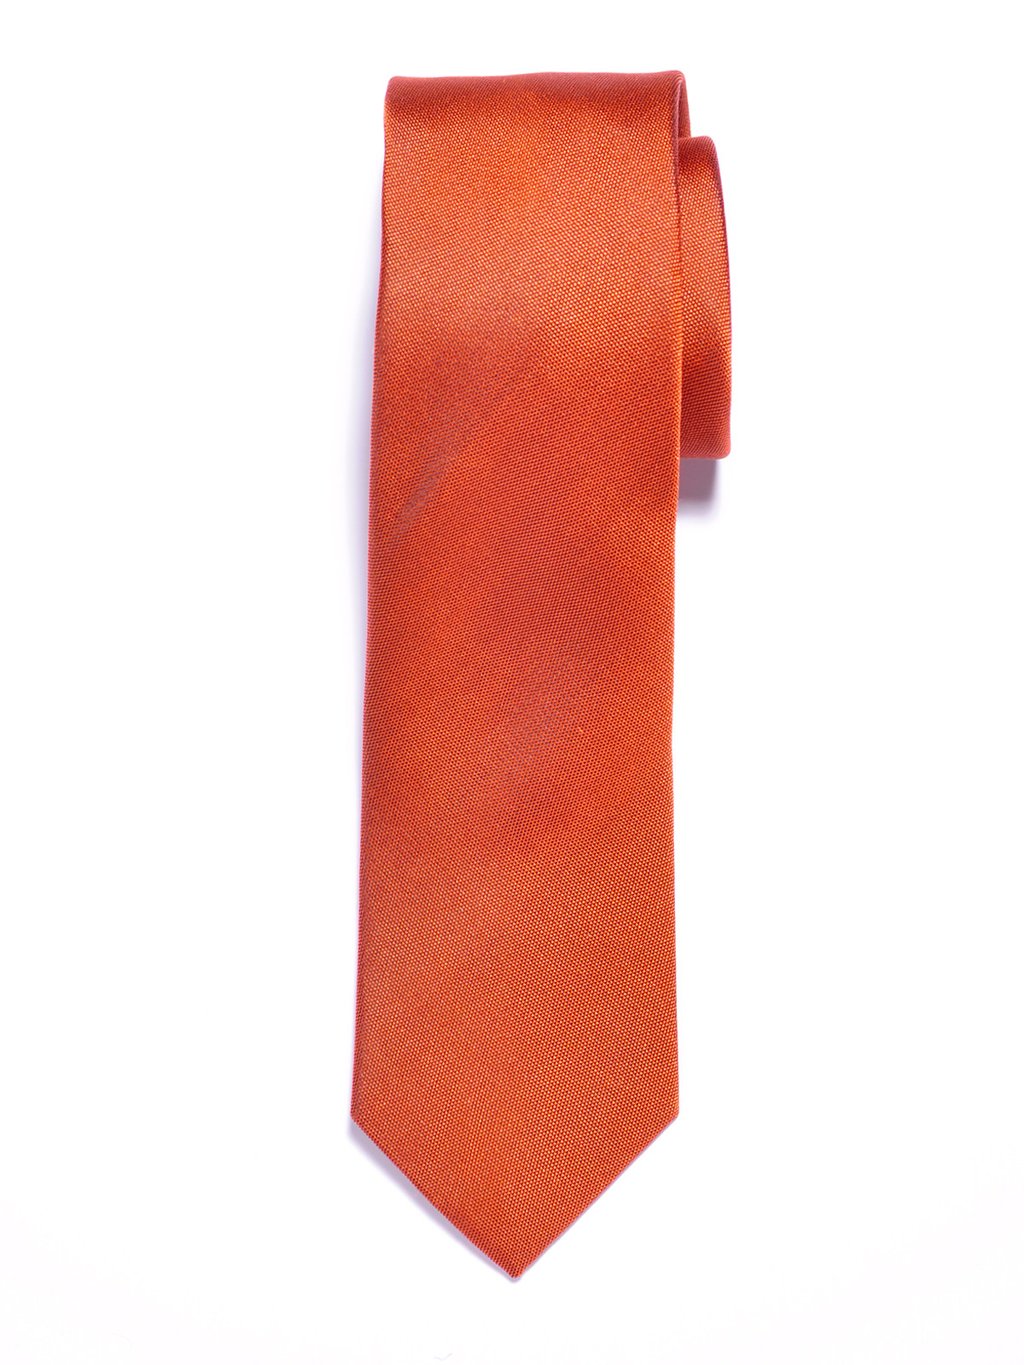 Solid Orange Silk Tie